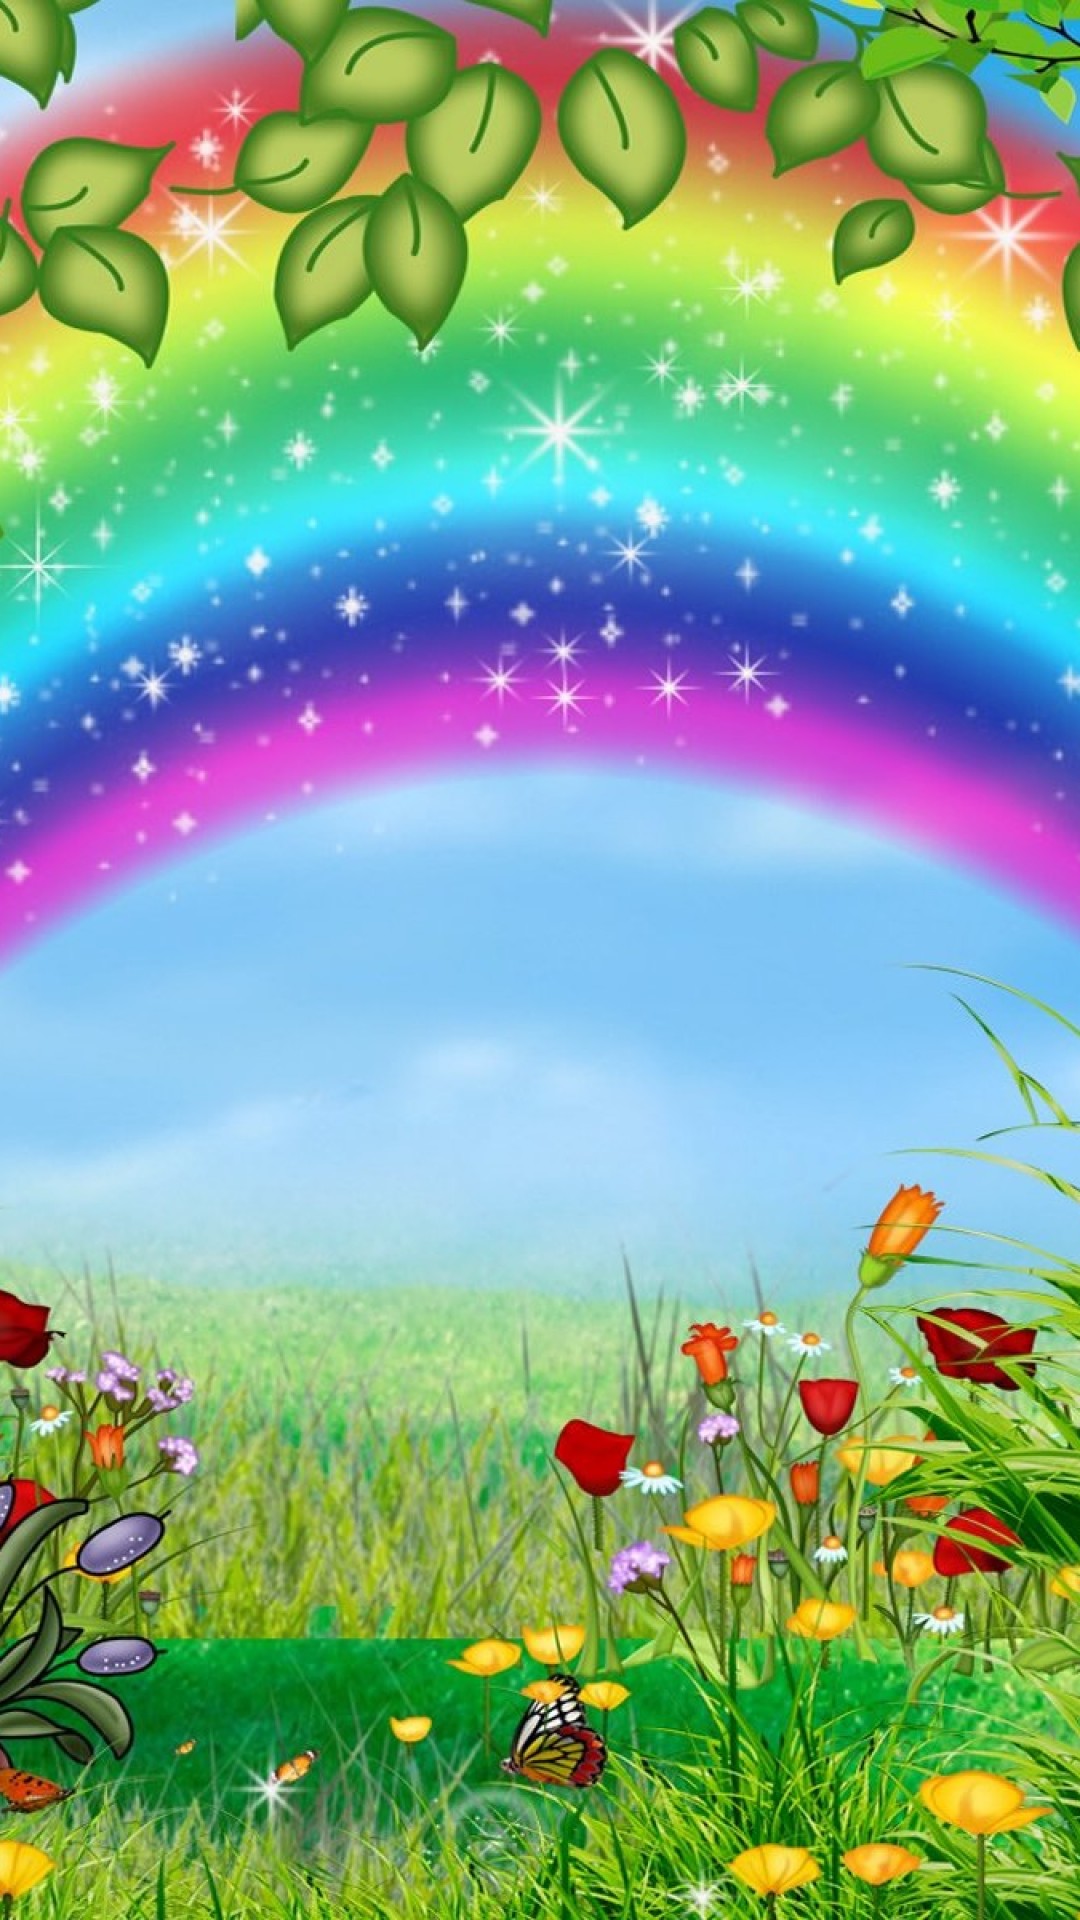 美しい虹の絵 かわいいiphone壁紙 Iphone11 スマホ壁紙 待受